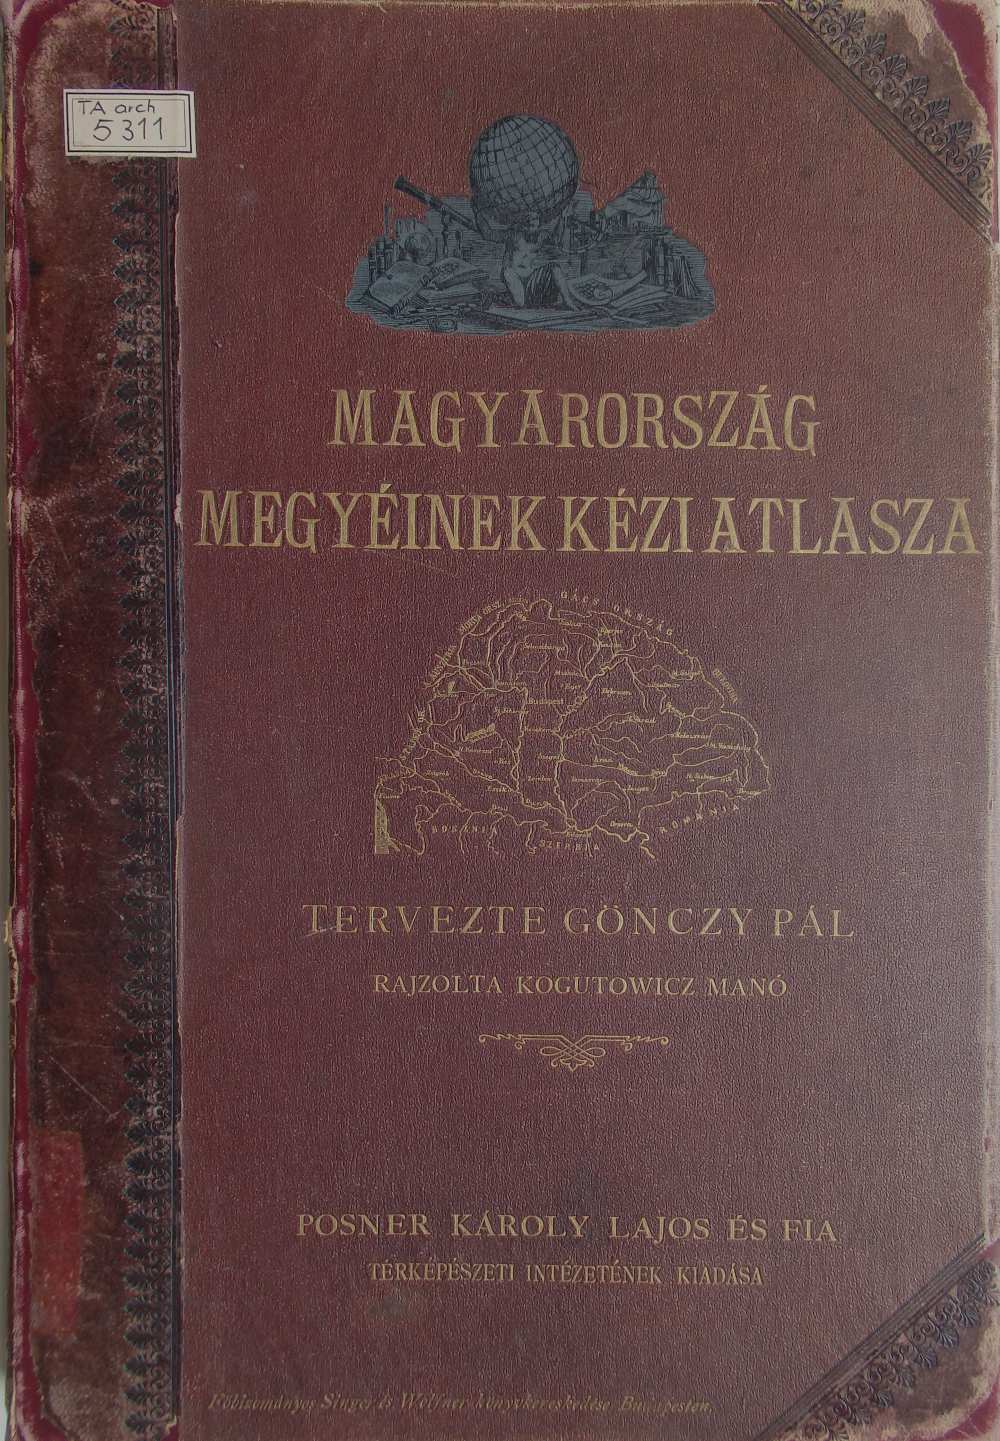 Magyarország vármegyéinek kézi atlasza [kötéstábla], Budapest, Posner K. L. és Fia, 1890. – Térkép-, Plakát- és Kisnyomtatványtár, TA 5.311 arch